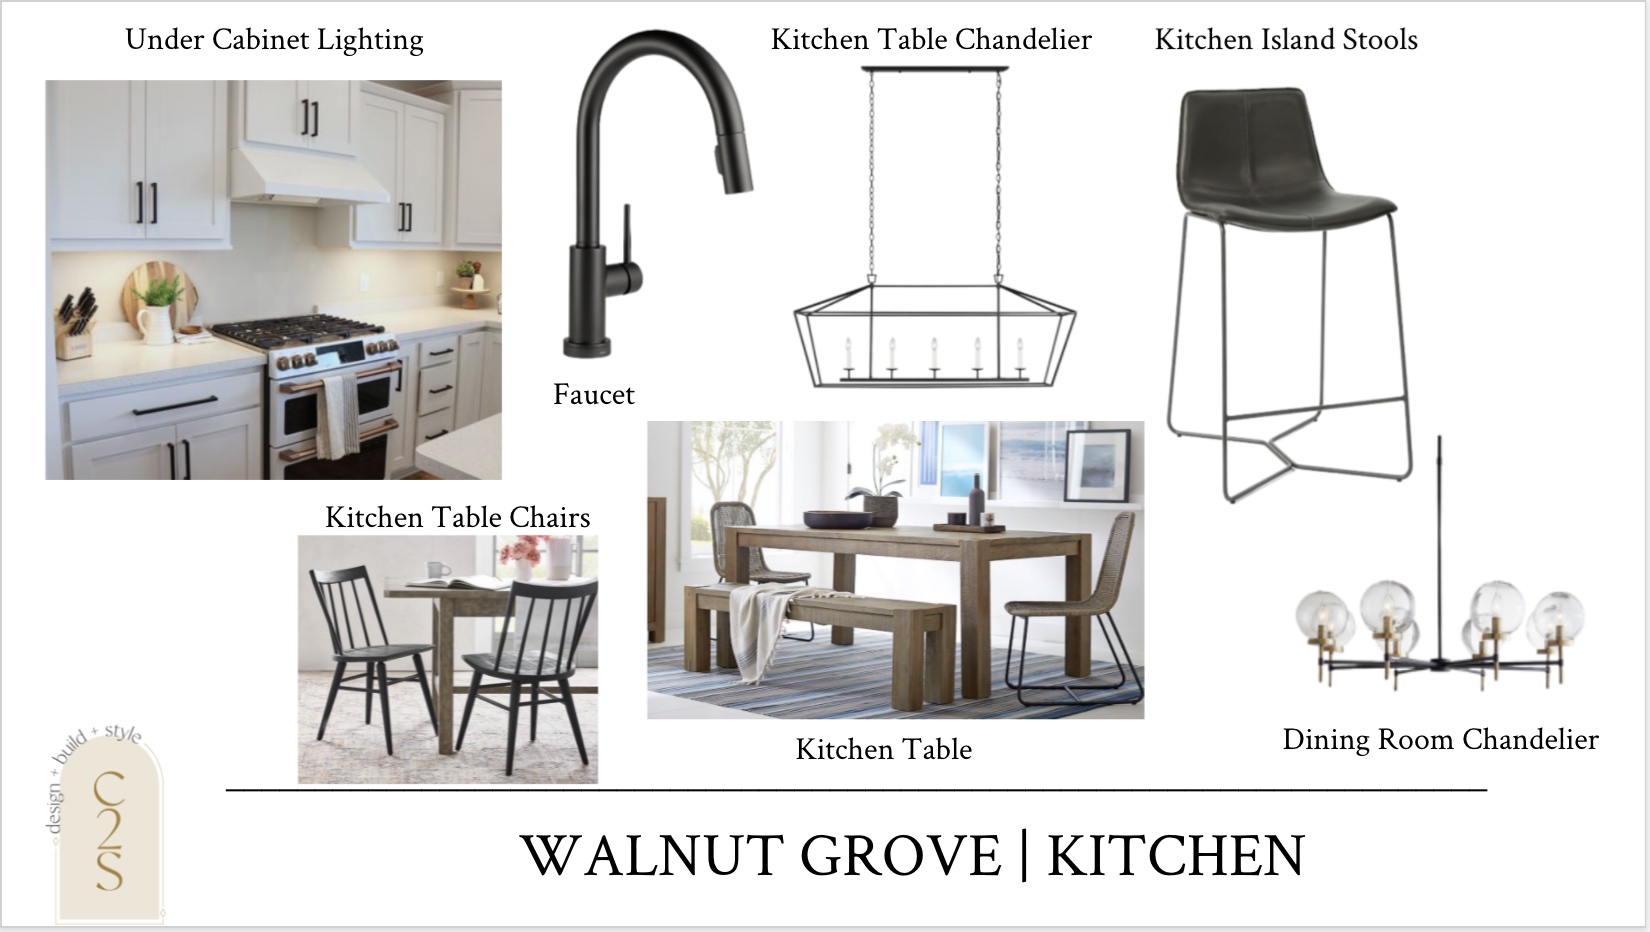 The Walnut Grove Home Design 18